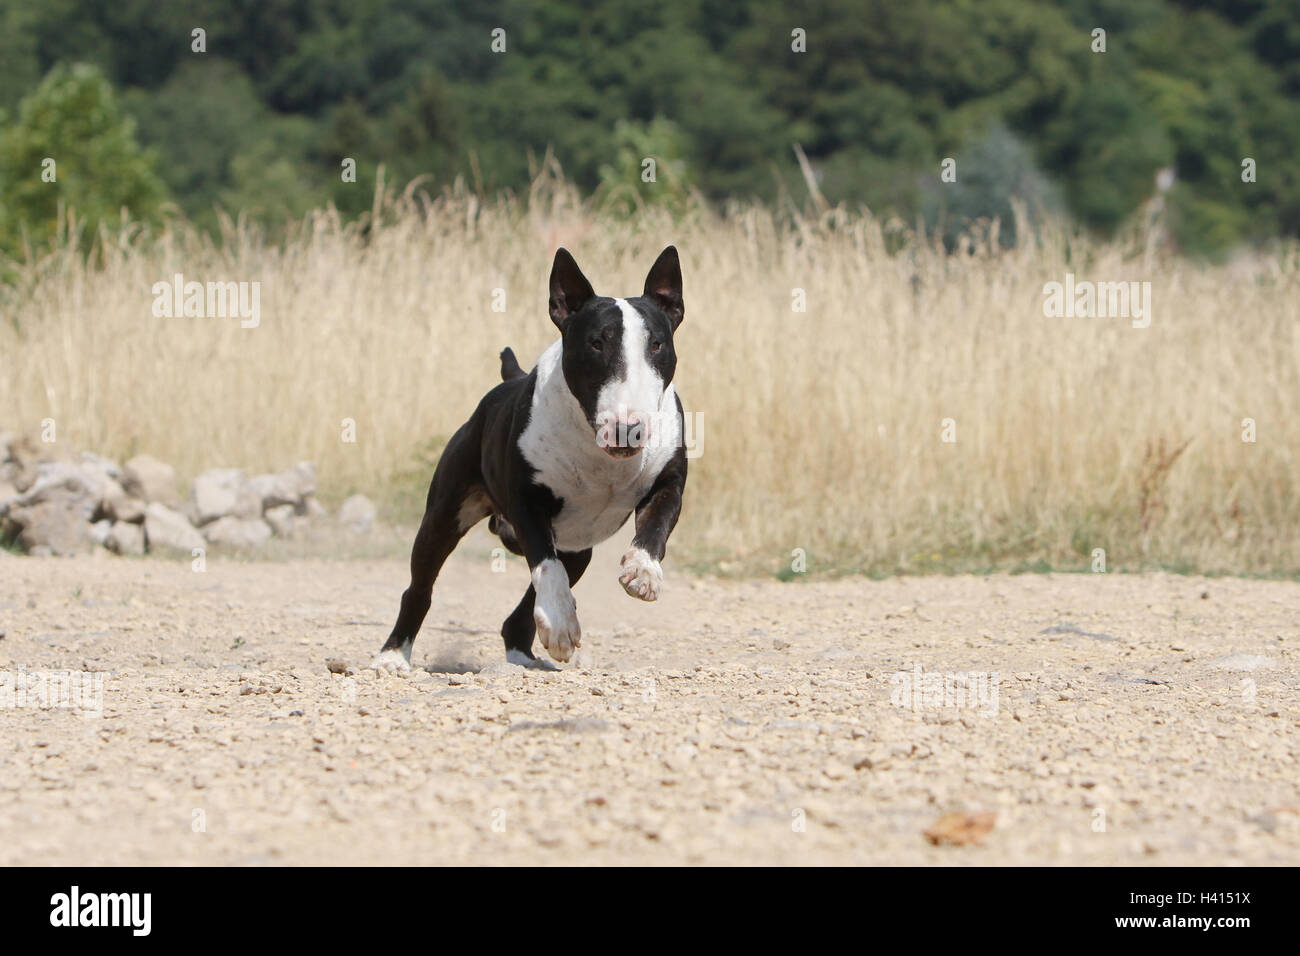 Dog Bull Terrier Anglais / bully / Gladator noir et blanc lors de l'exécution Banque D'Images